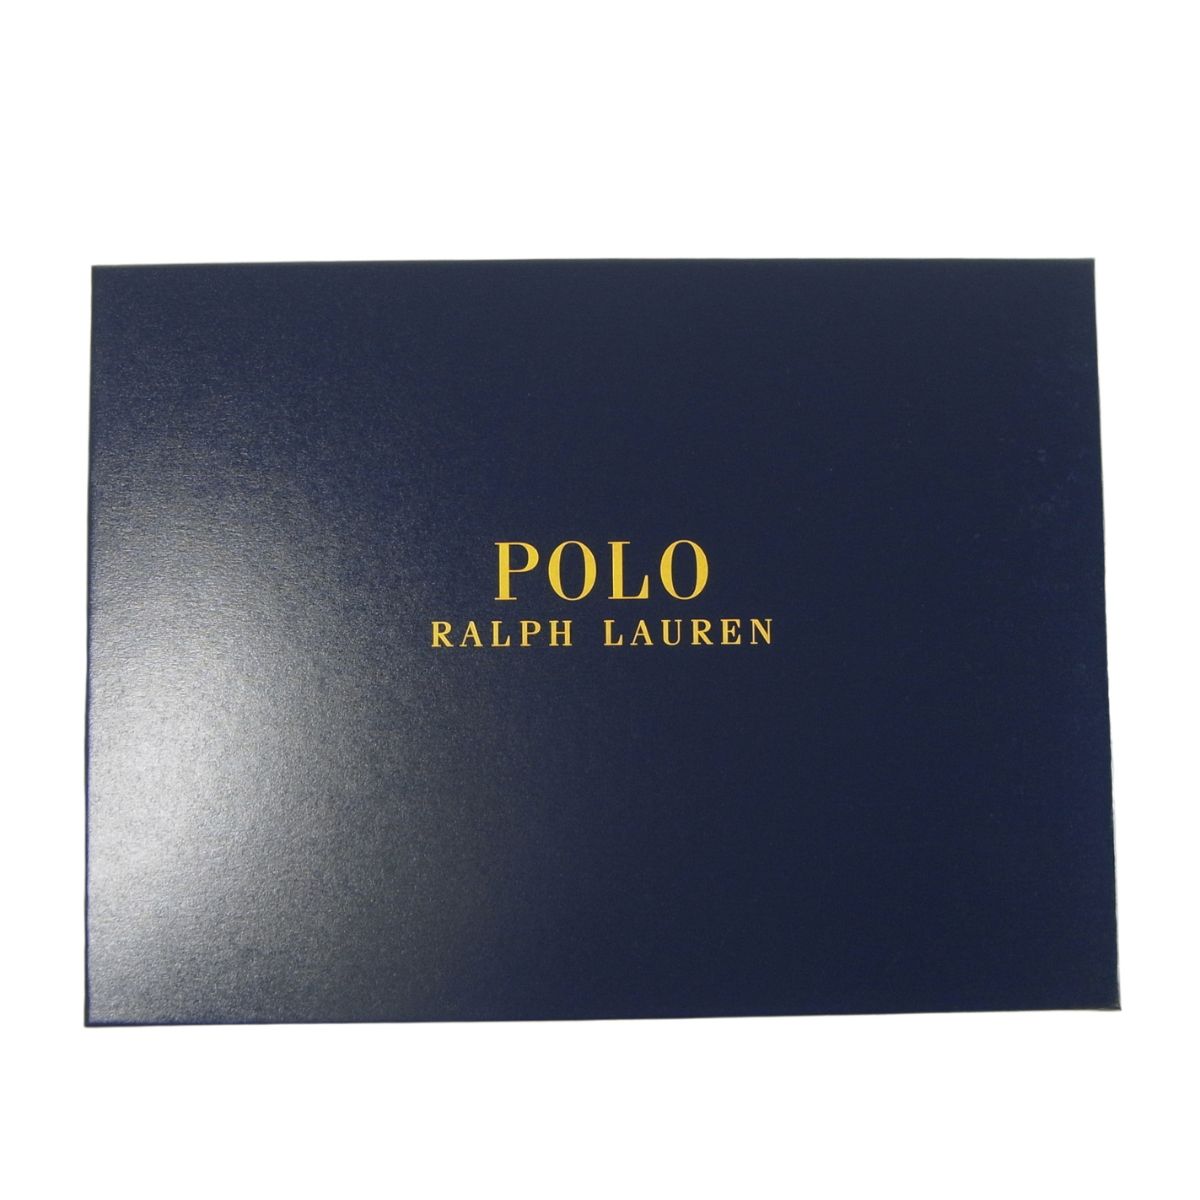 ポロ ラルフ ローレン POLO RALPH LAUREN ポロラルフローレン ギフトボックス ケース 箱 プレゼント メンズ レディース マフラー 帽子 手袋